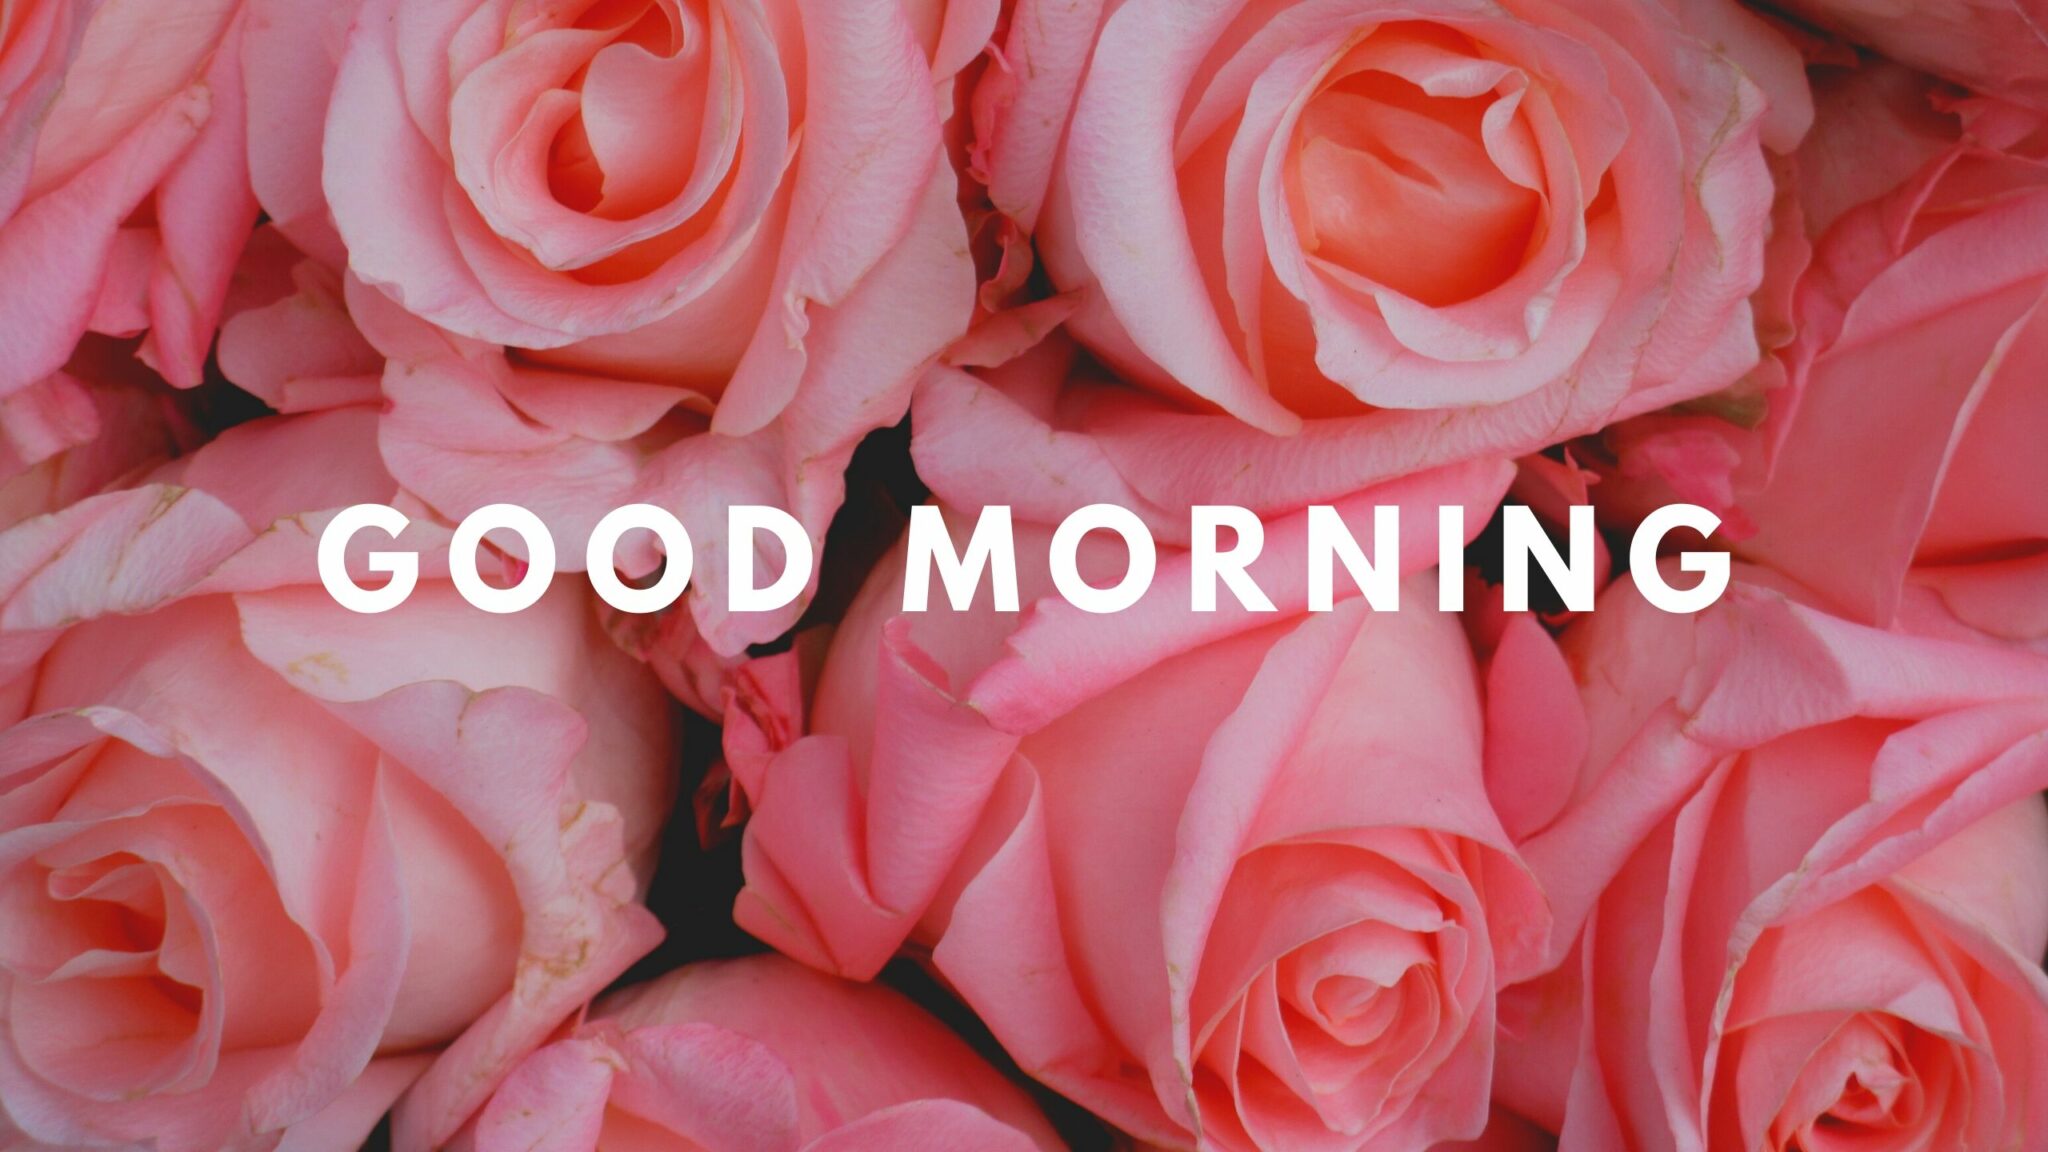 Good Morning Flower Rose Pink Image